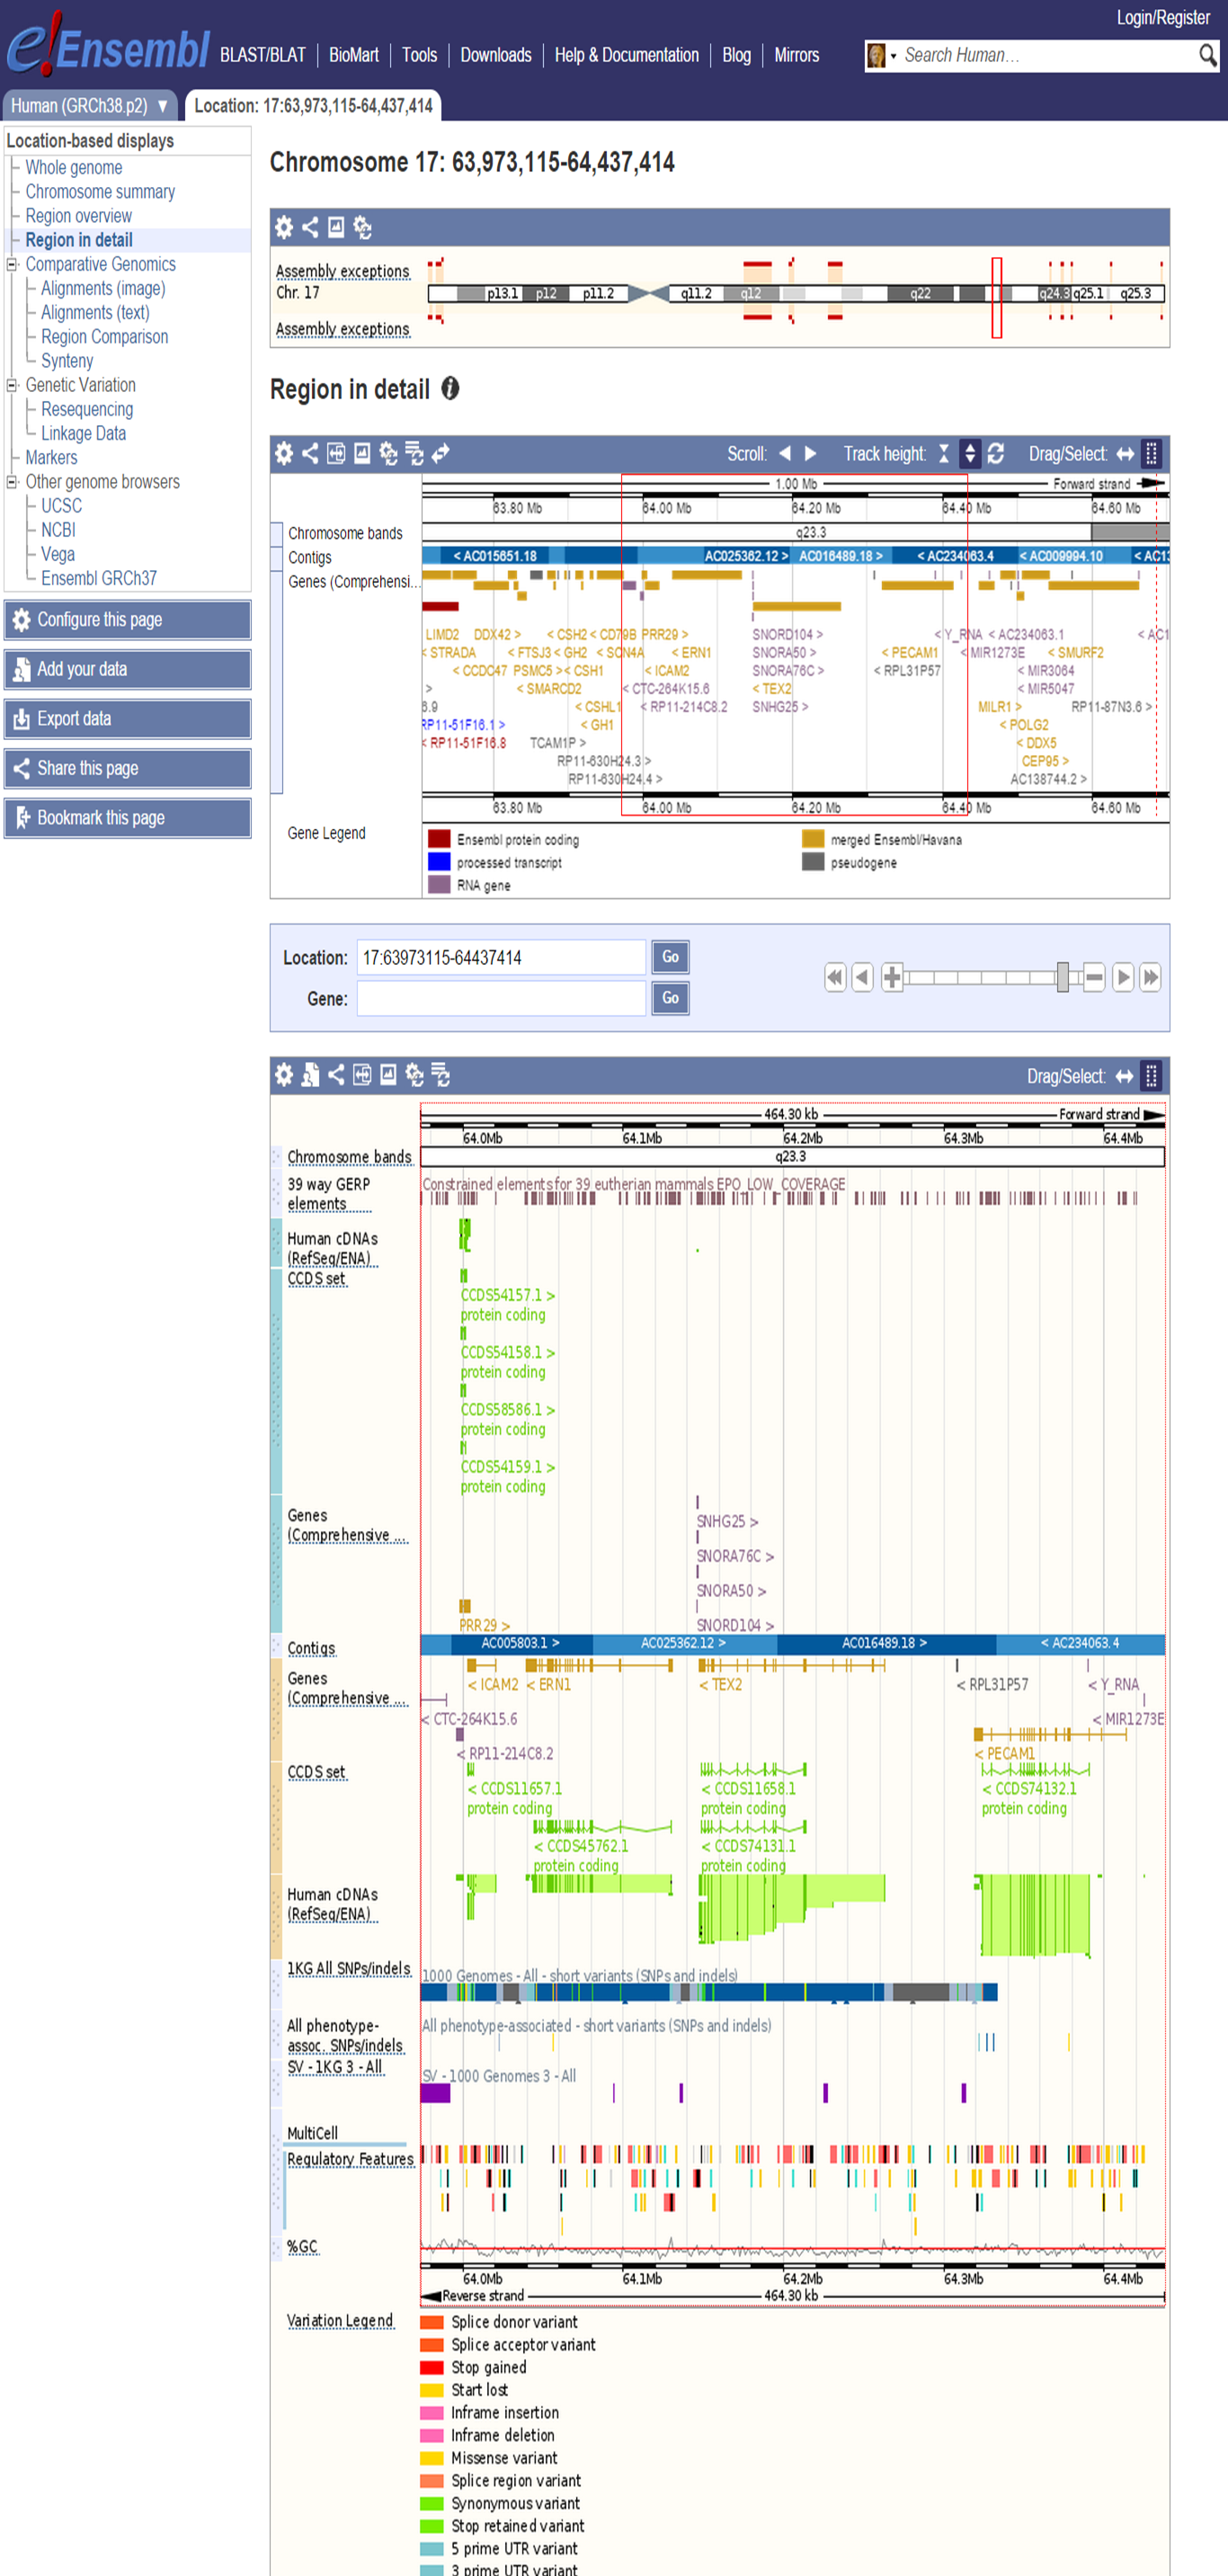 Ensembl Genome Browser interface